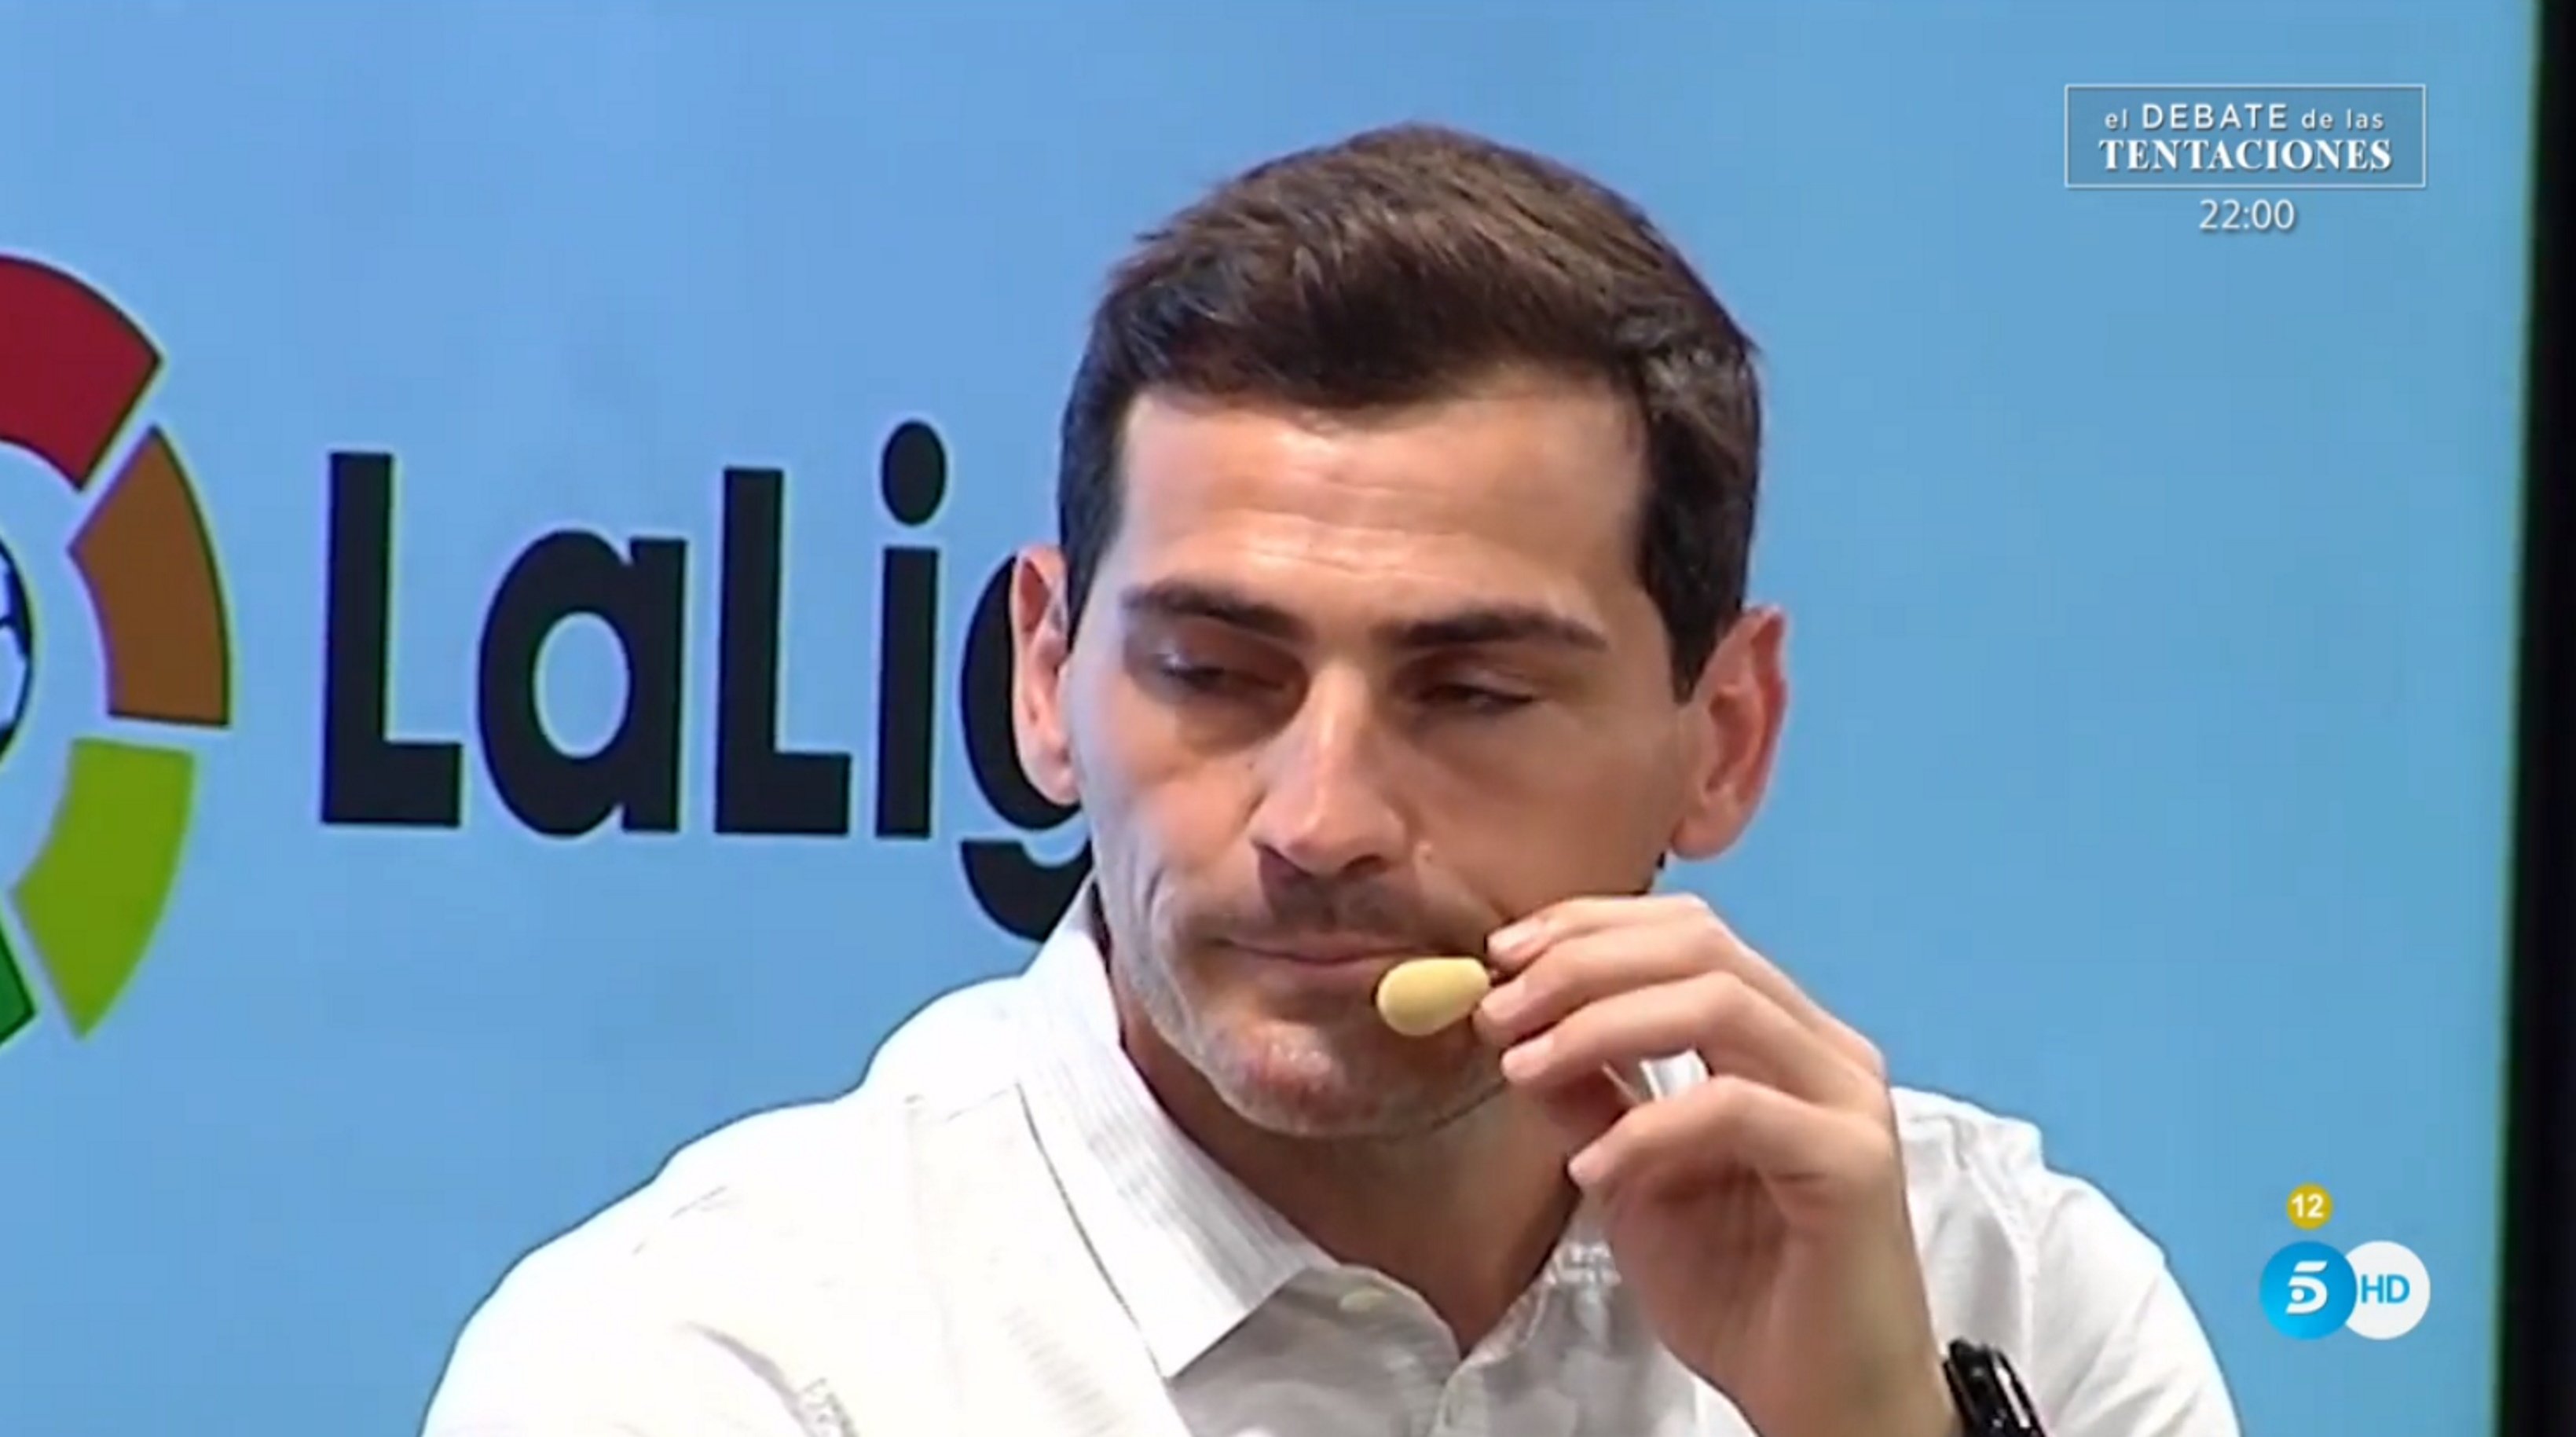 Iker Casillas emprenyat per la seva millor amiga búlgara i pren una dura decisió